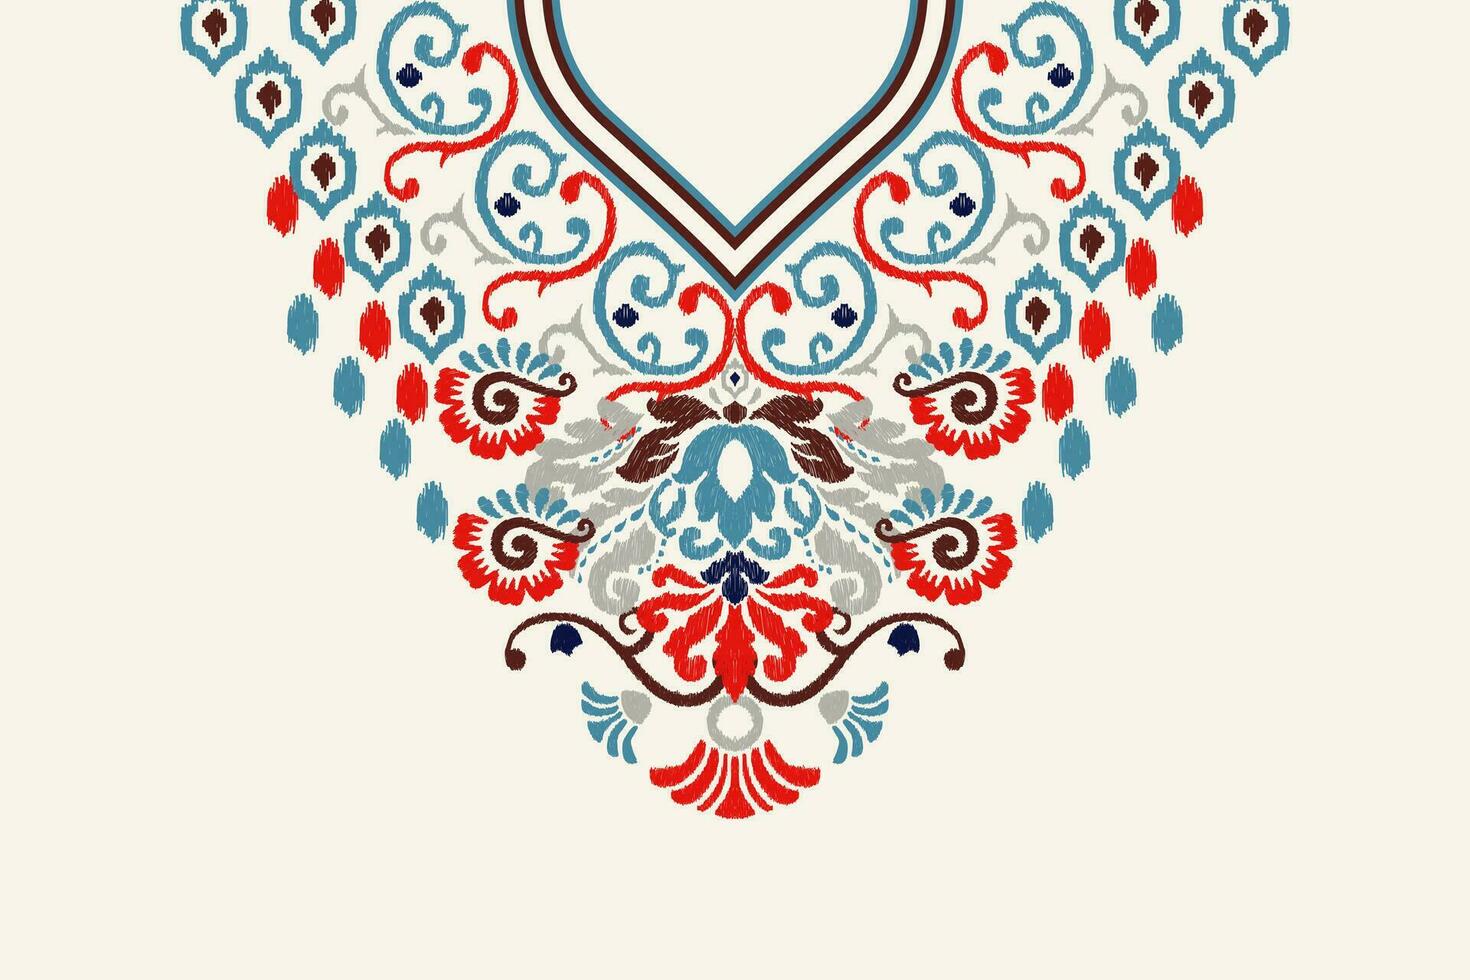 bellissimo floreale scollatura ikat paisley ricamo su bianca background.boho scollatura modelli tradizionale.azteco stile astratto vettore illustrazione.disegno per trama, tessuto, abbigliamento, avvolgimento, decorazione